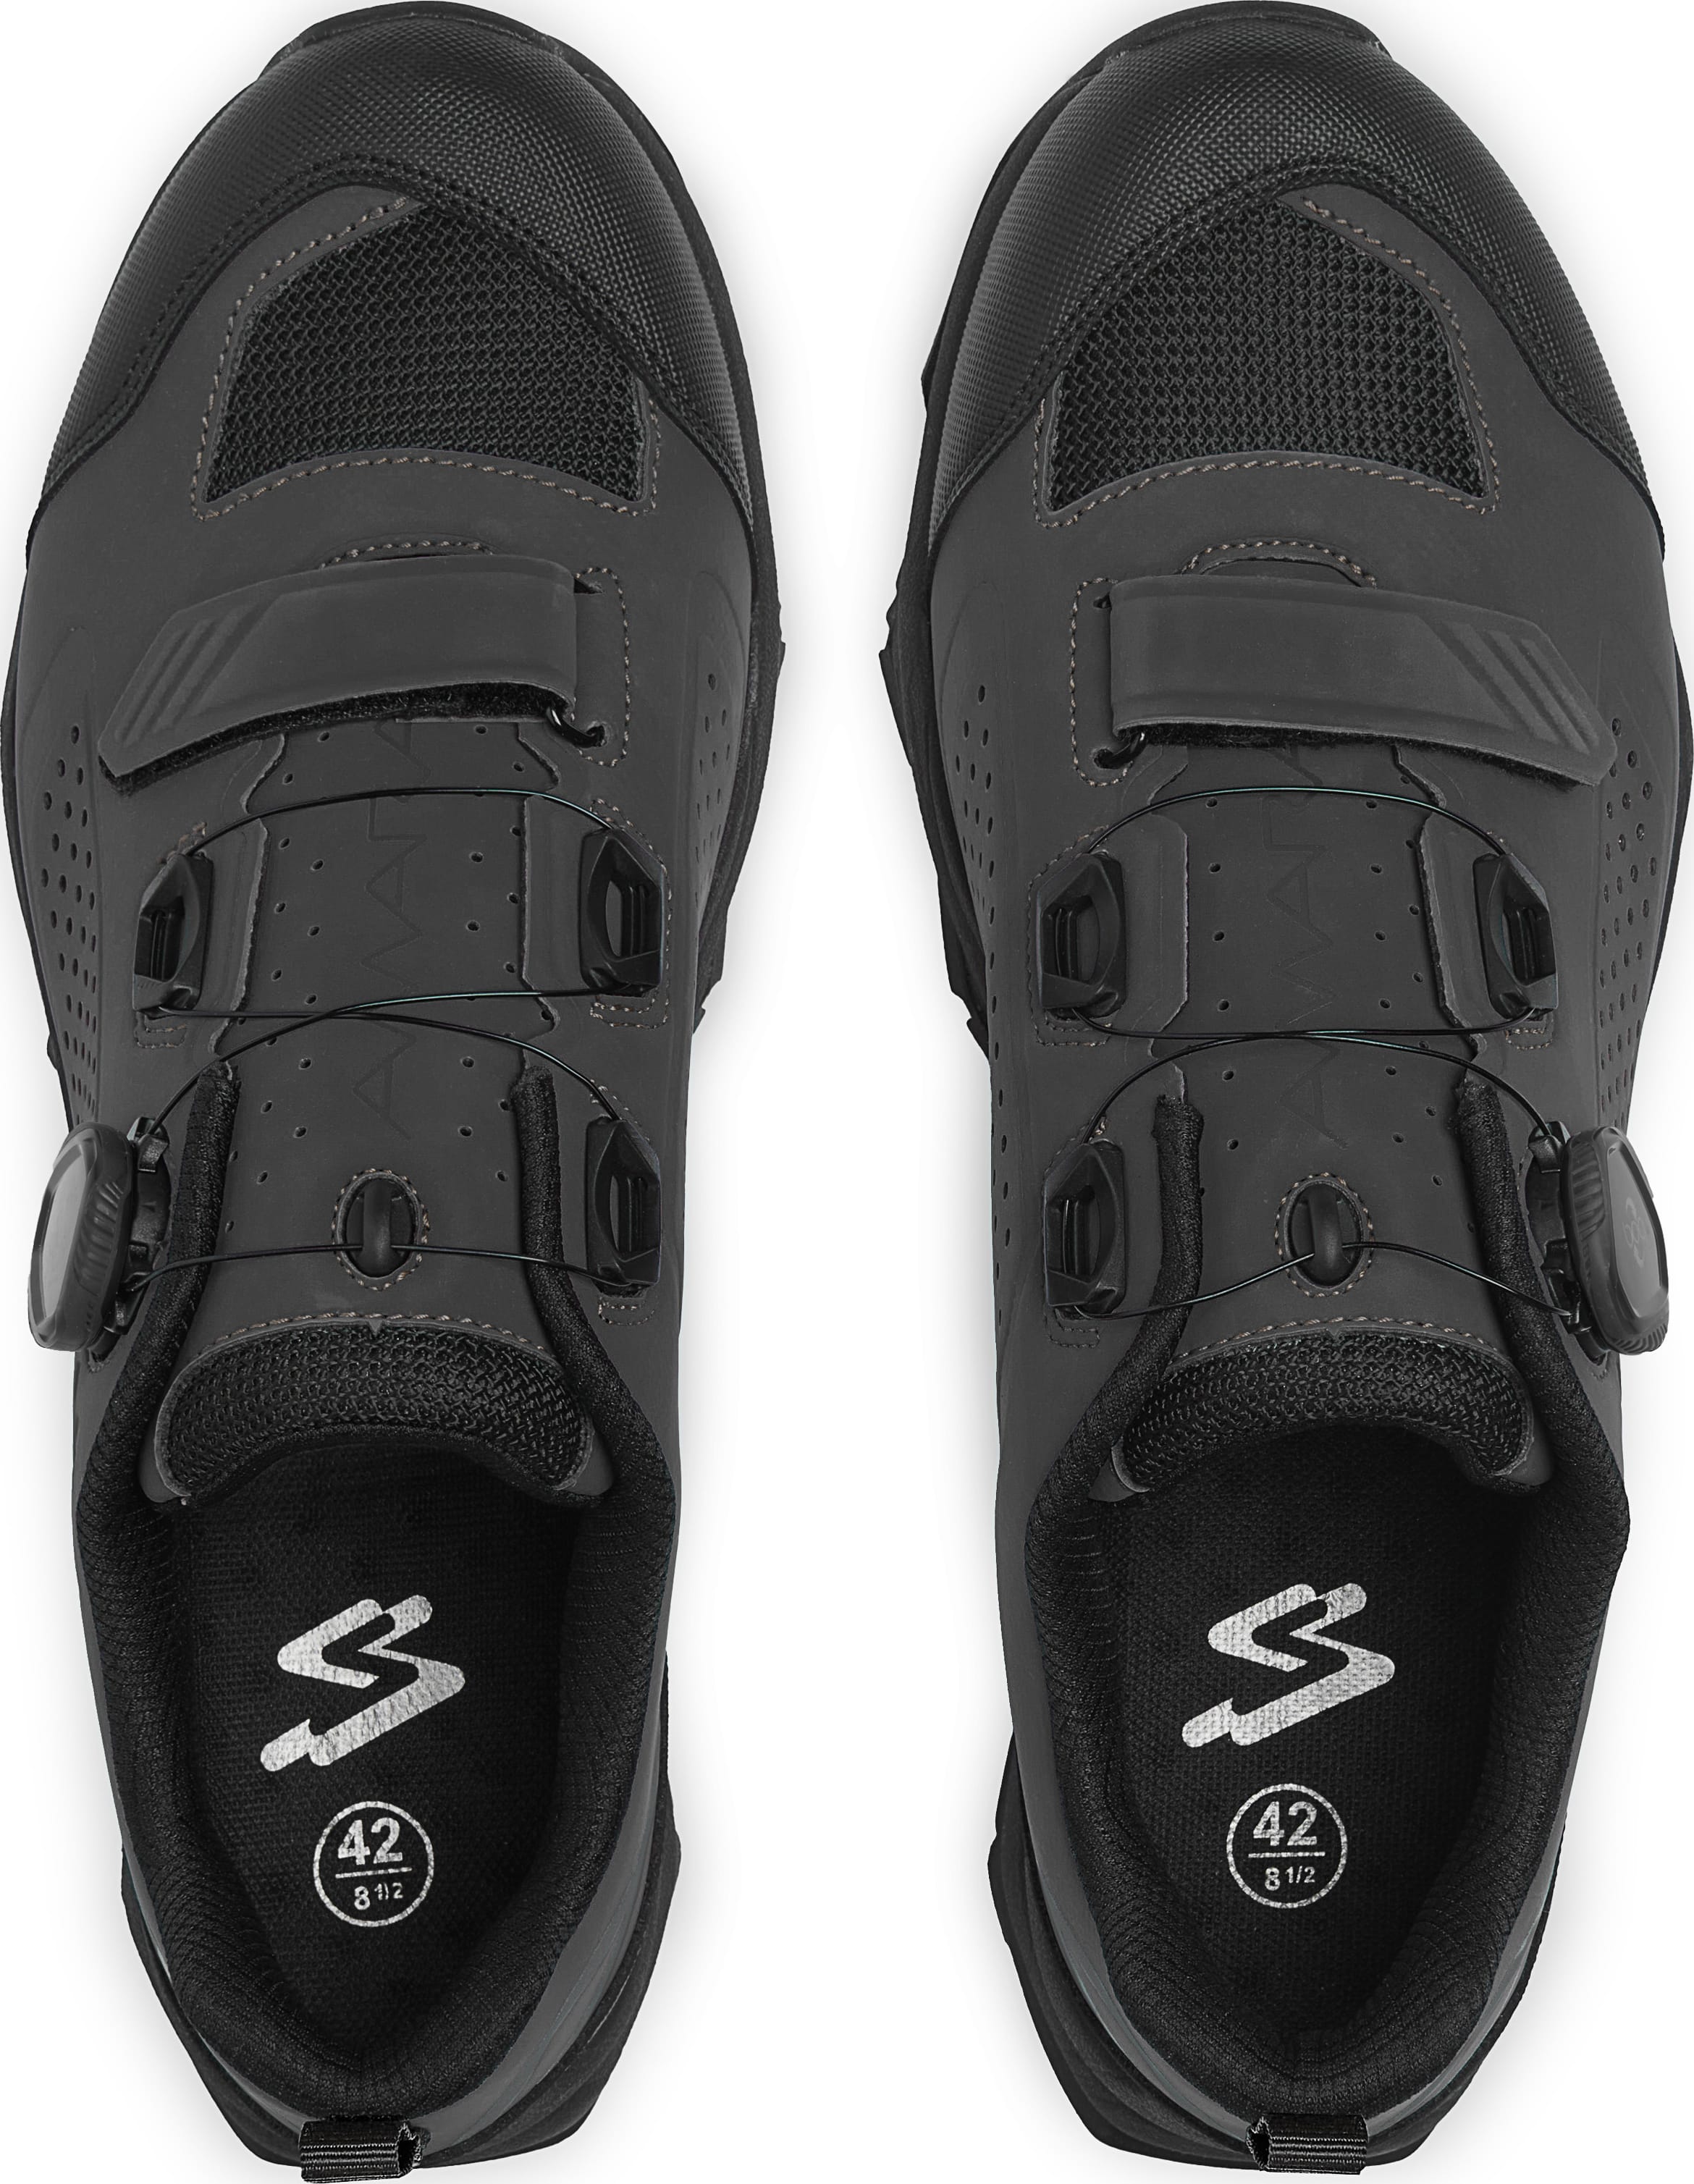 Обувь Spiuk Amara M2V MTB размер UK 8 (42 260мм) черные фото 2